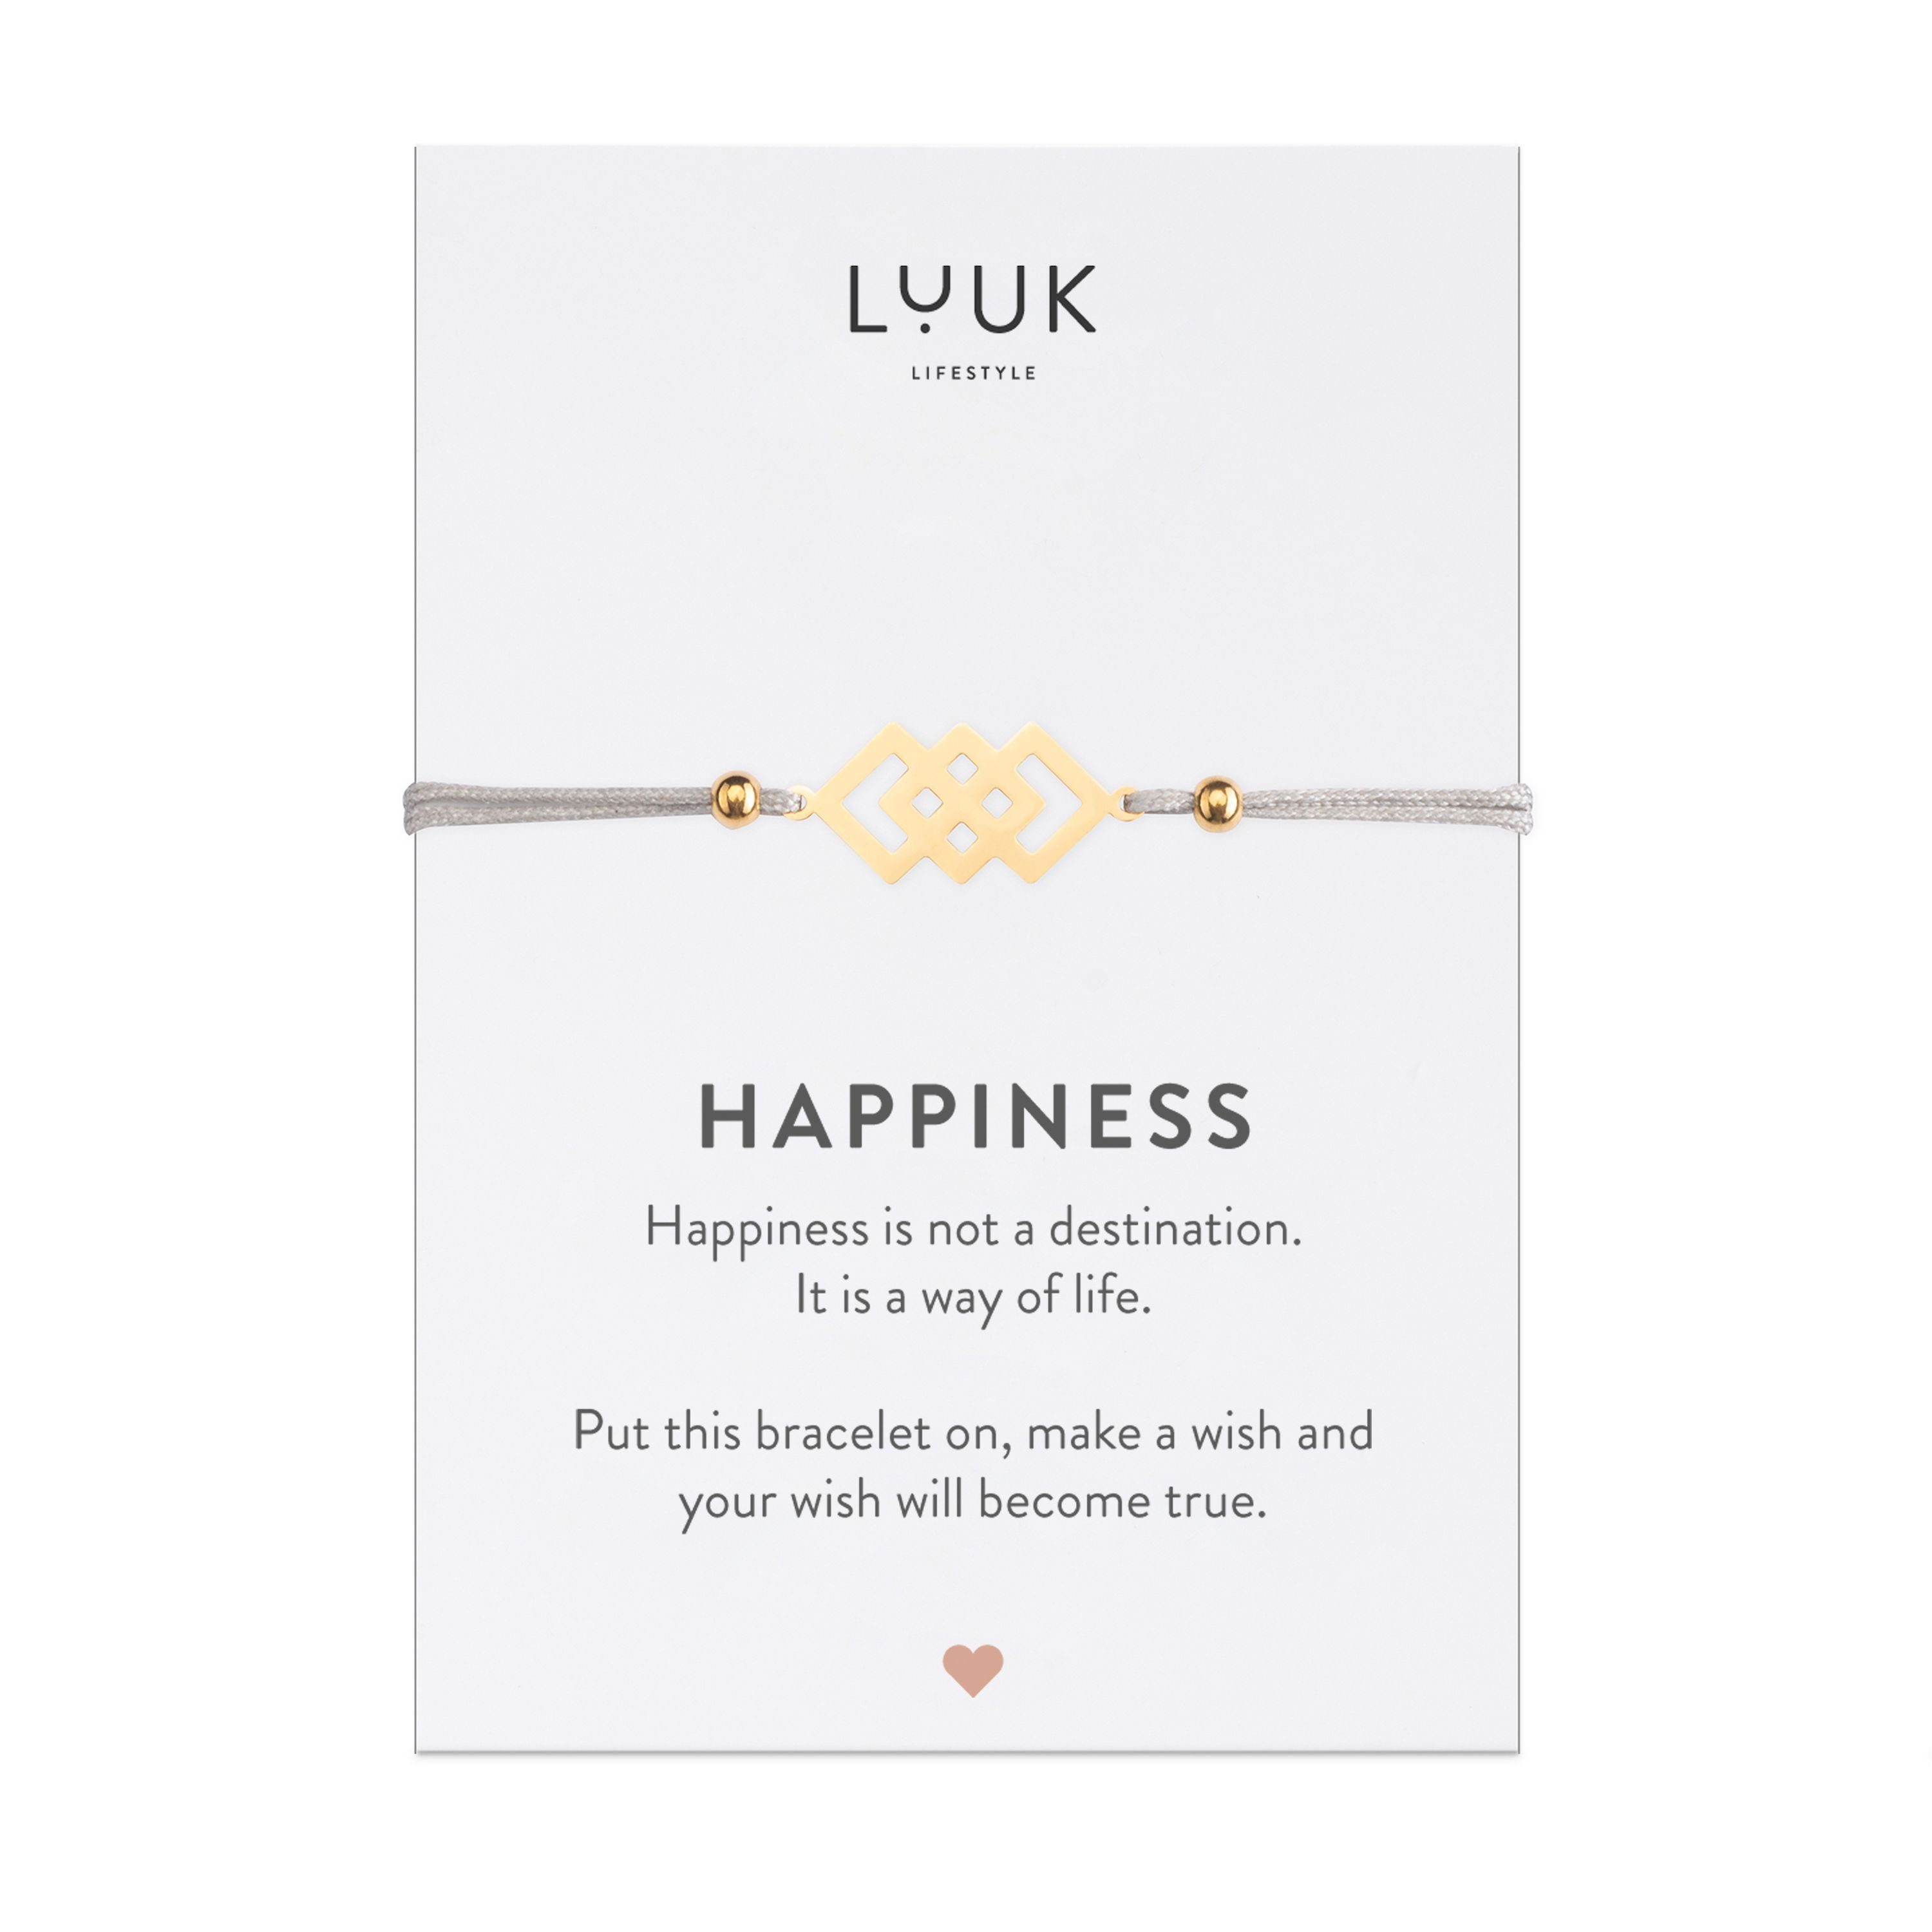 LUUK LIFESTYLE Freundschaftsarmband verschlungene Quadrate, handmade, mit Happiness Spruchkarte Gold